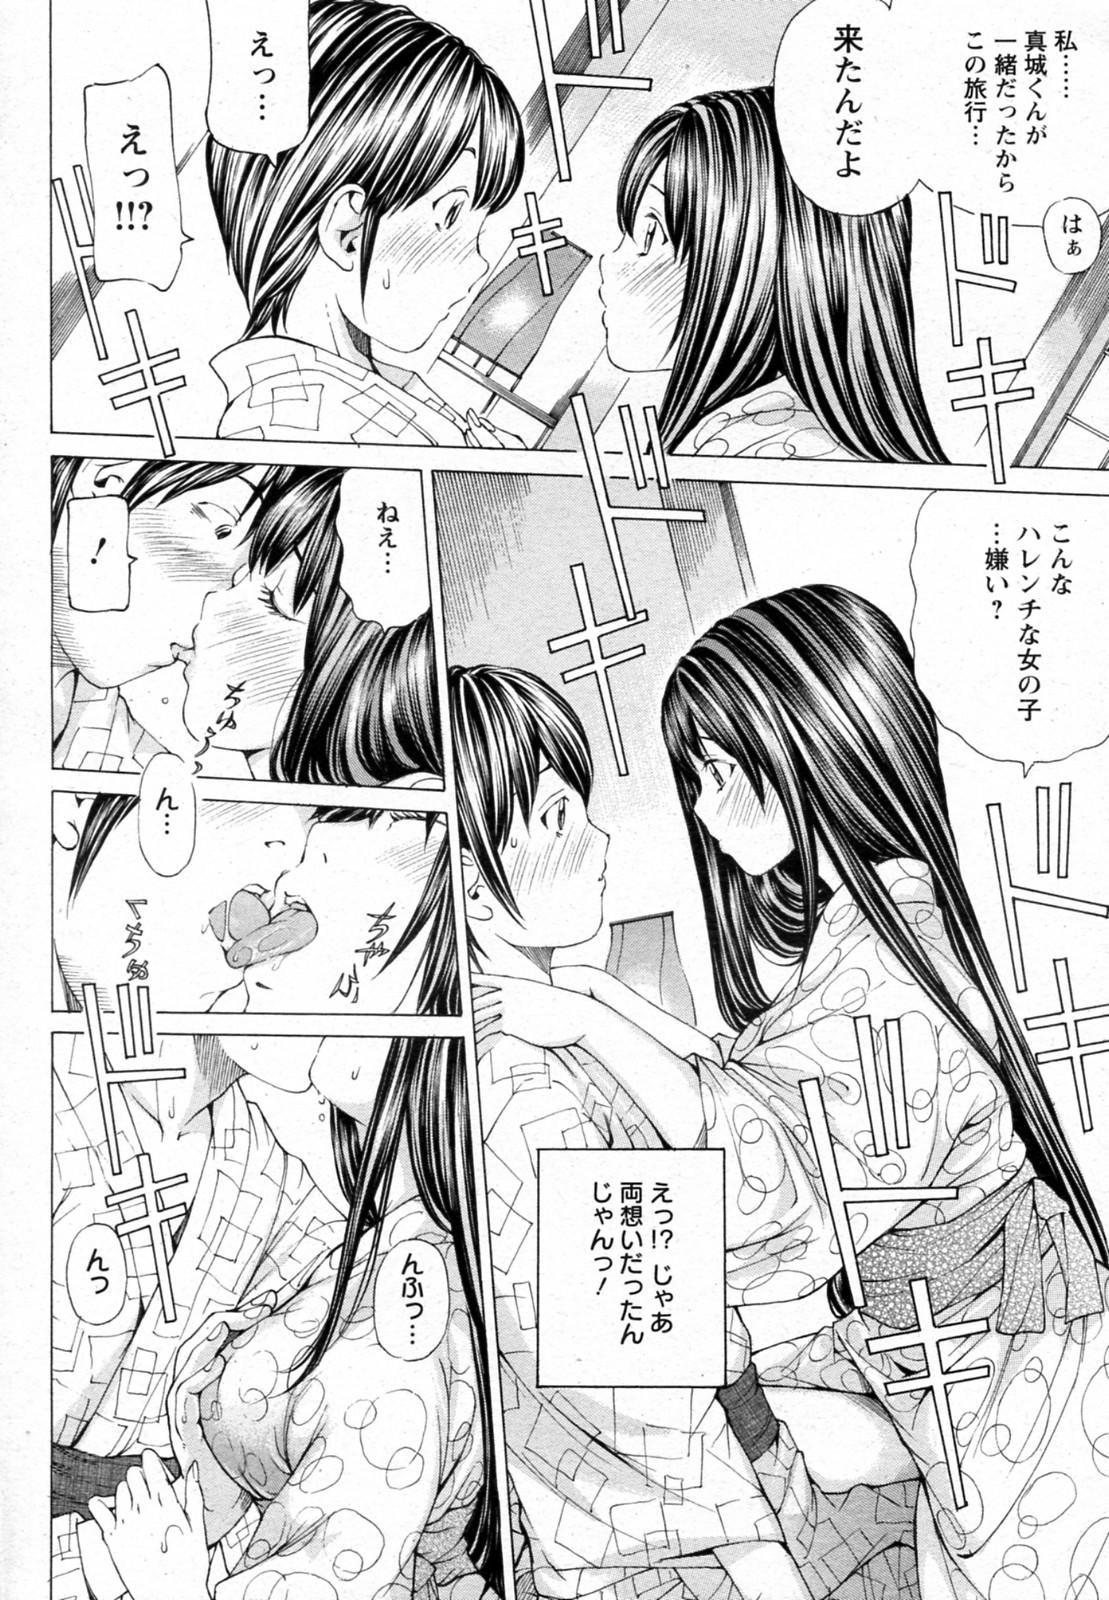 Blowing Sakuranbo no Toki Assfuck - Page 8